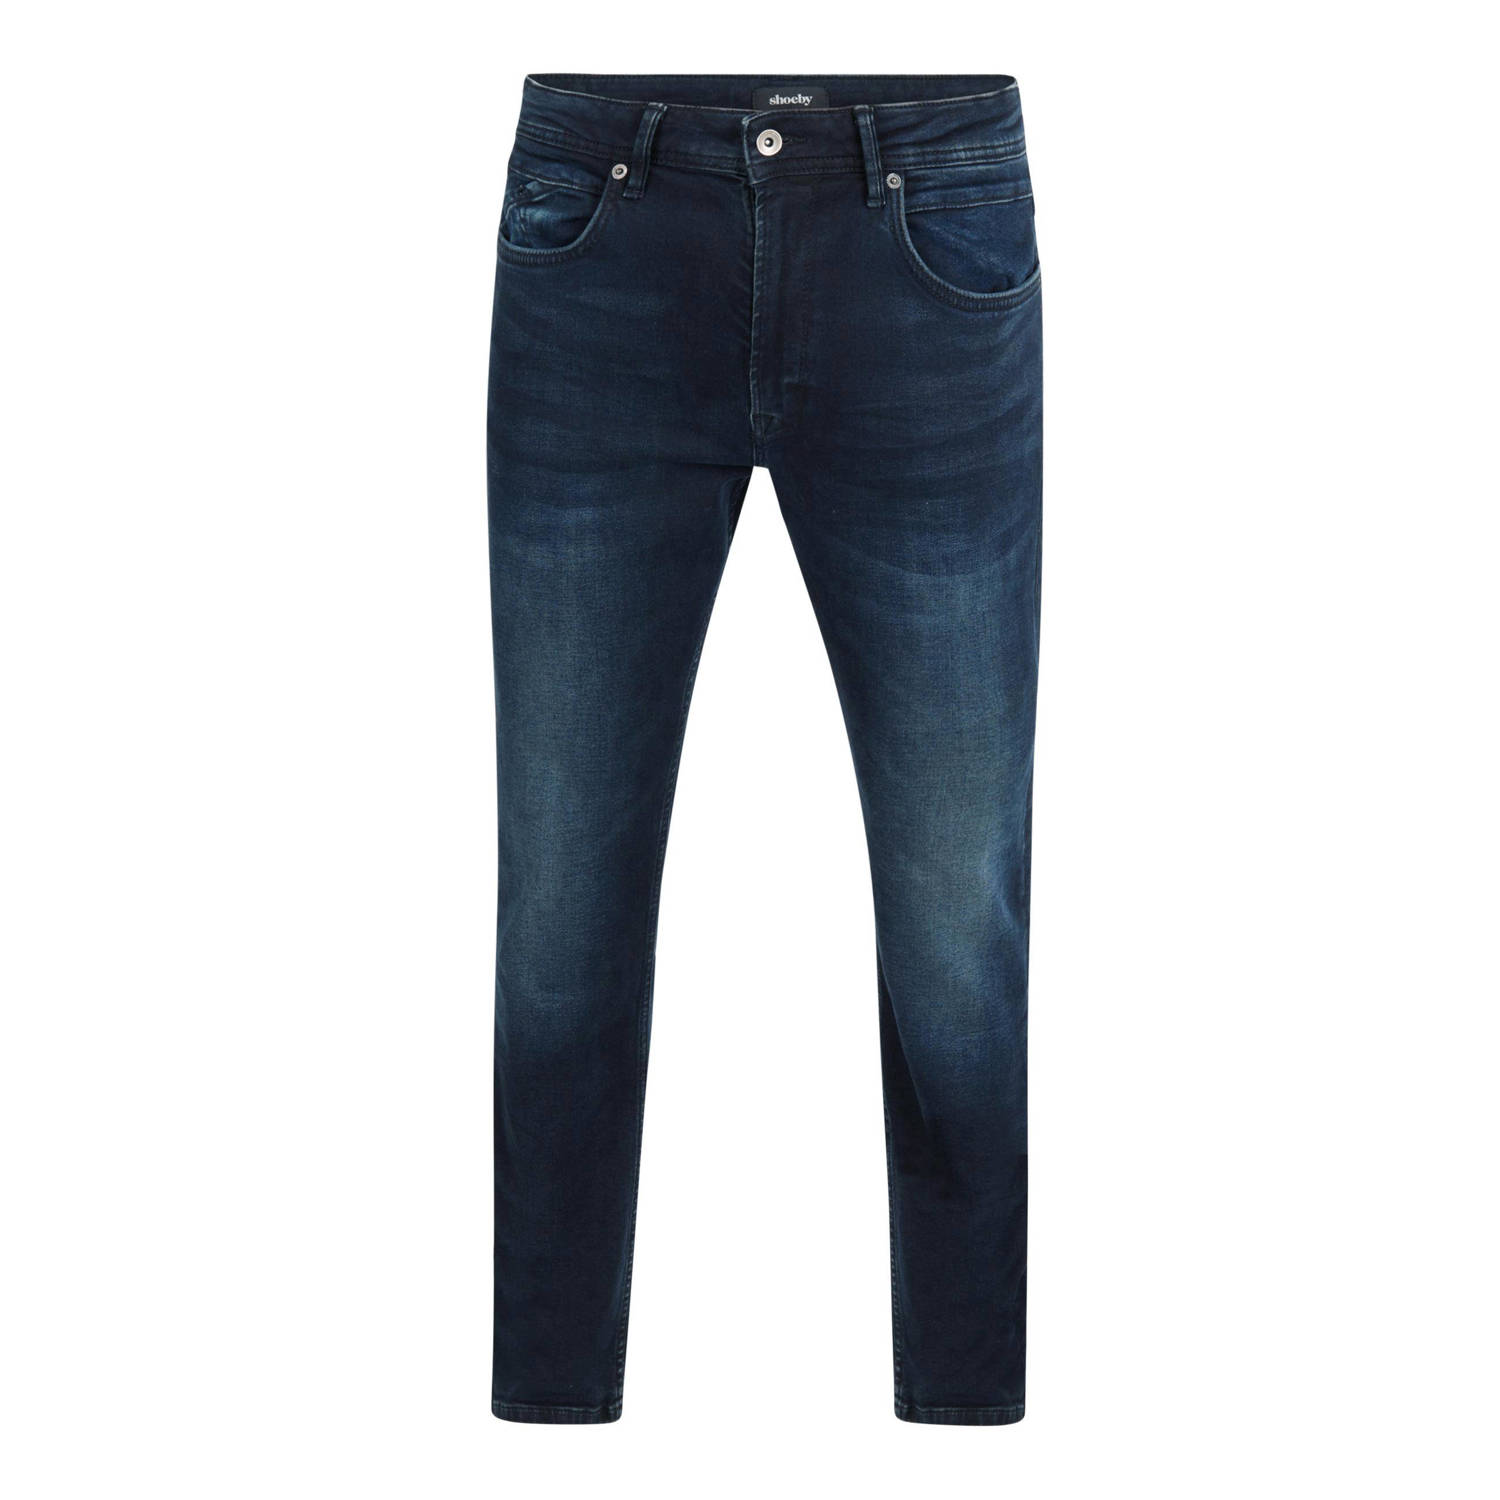 Shoeby straight fit L30 jeans blue black